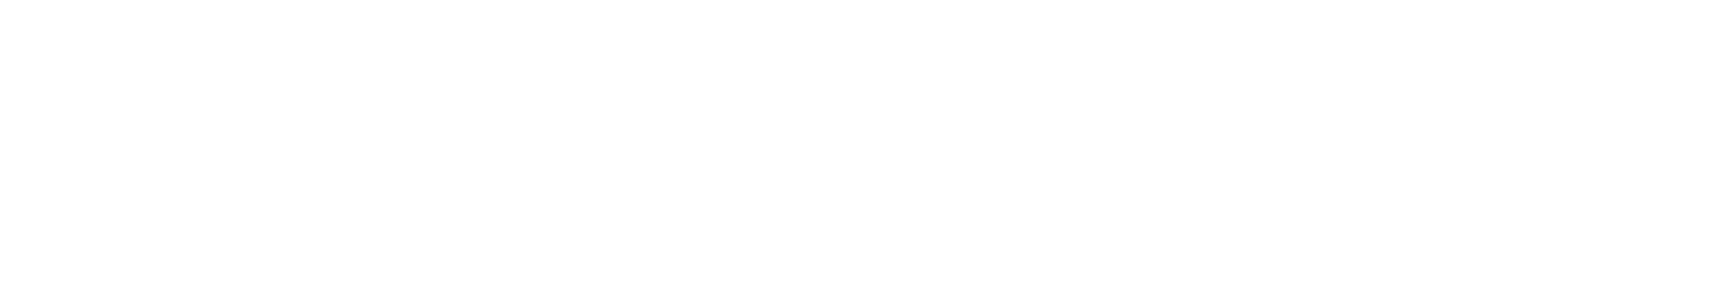 logo-Purpose-Jobs-White@2x